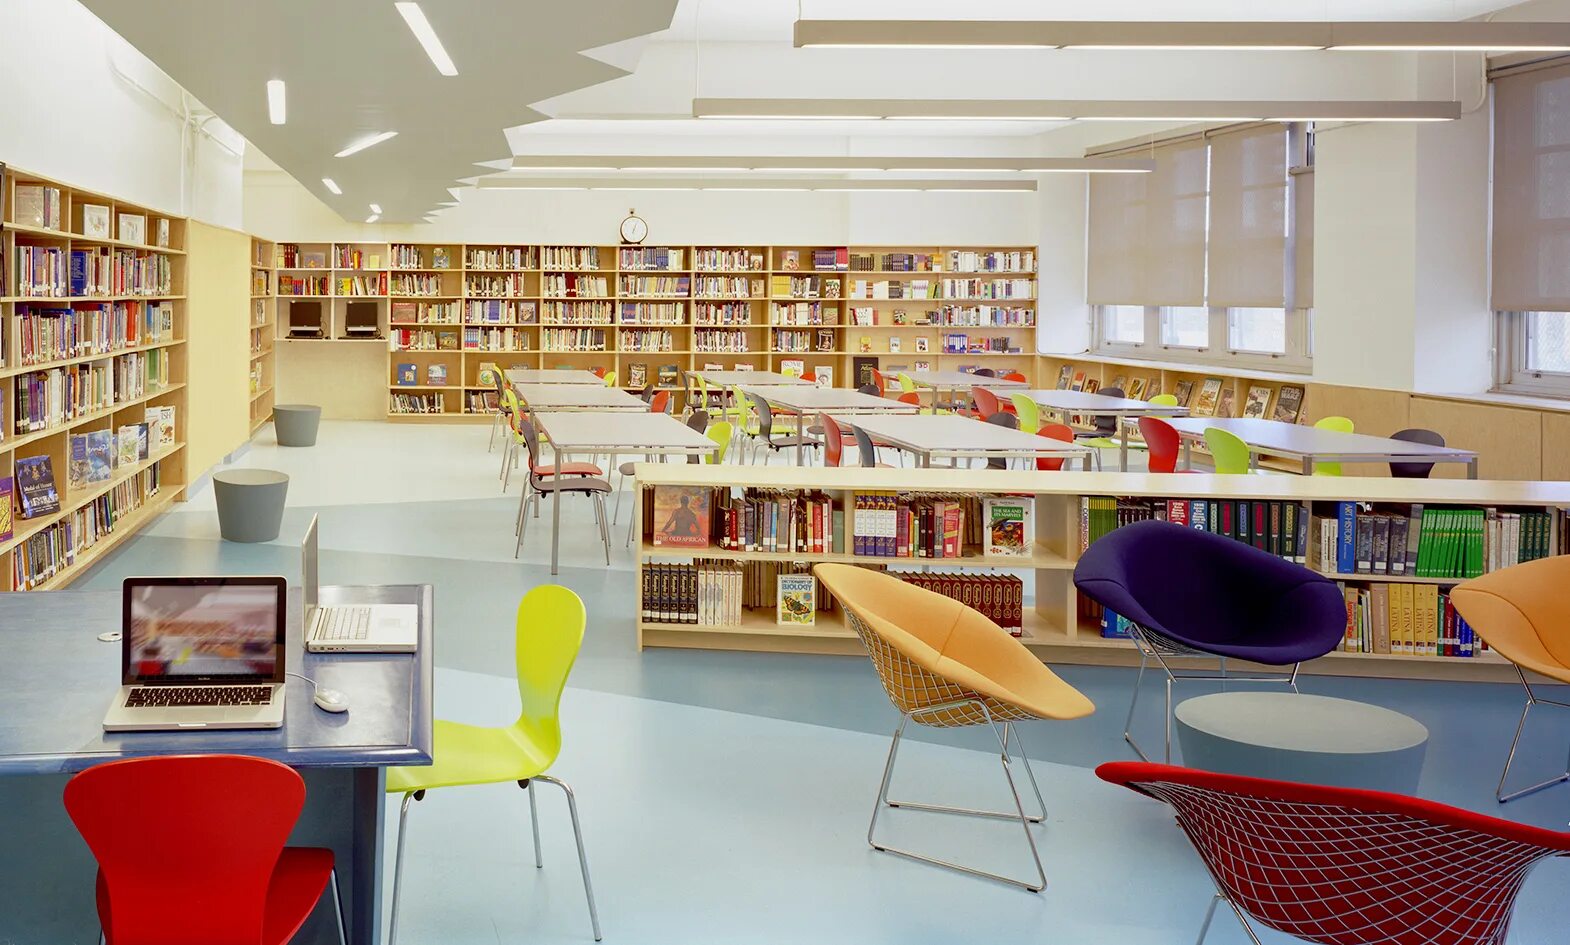 This is our library. Интерьер современной библиотеки. Библиотека в школе. Современная Школьная библиотека. Современная библиотека в школе.